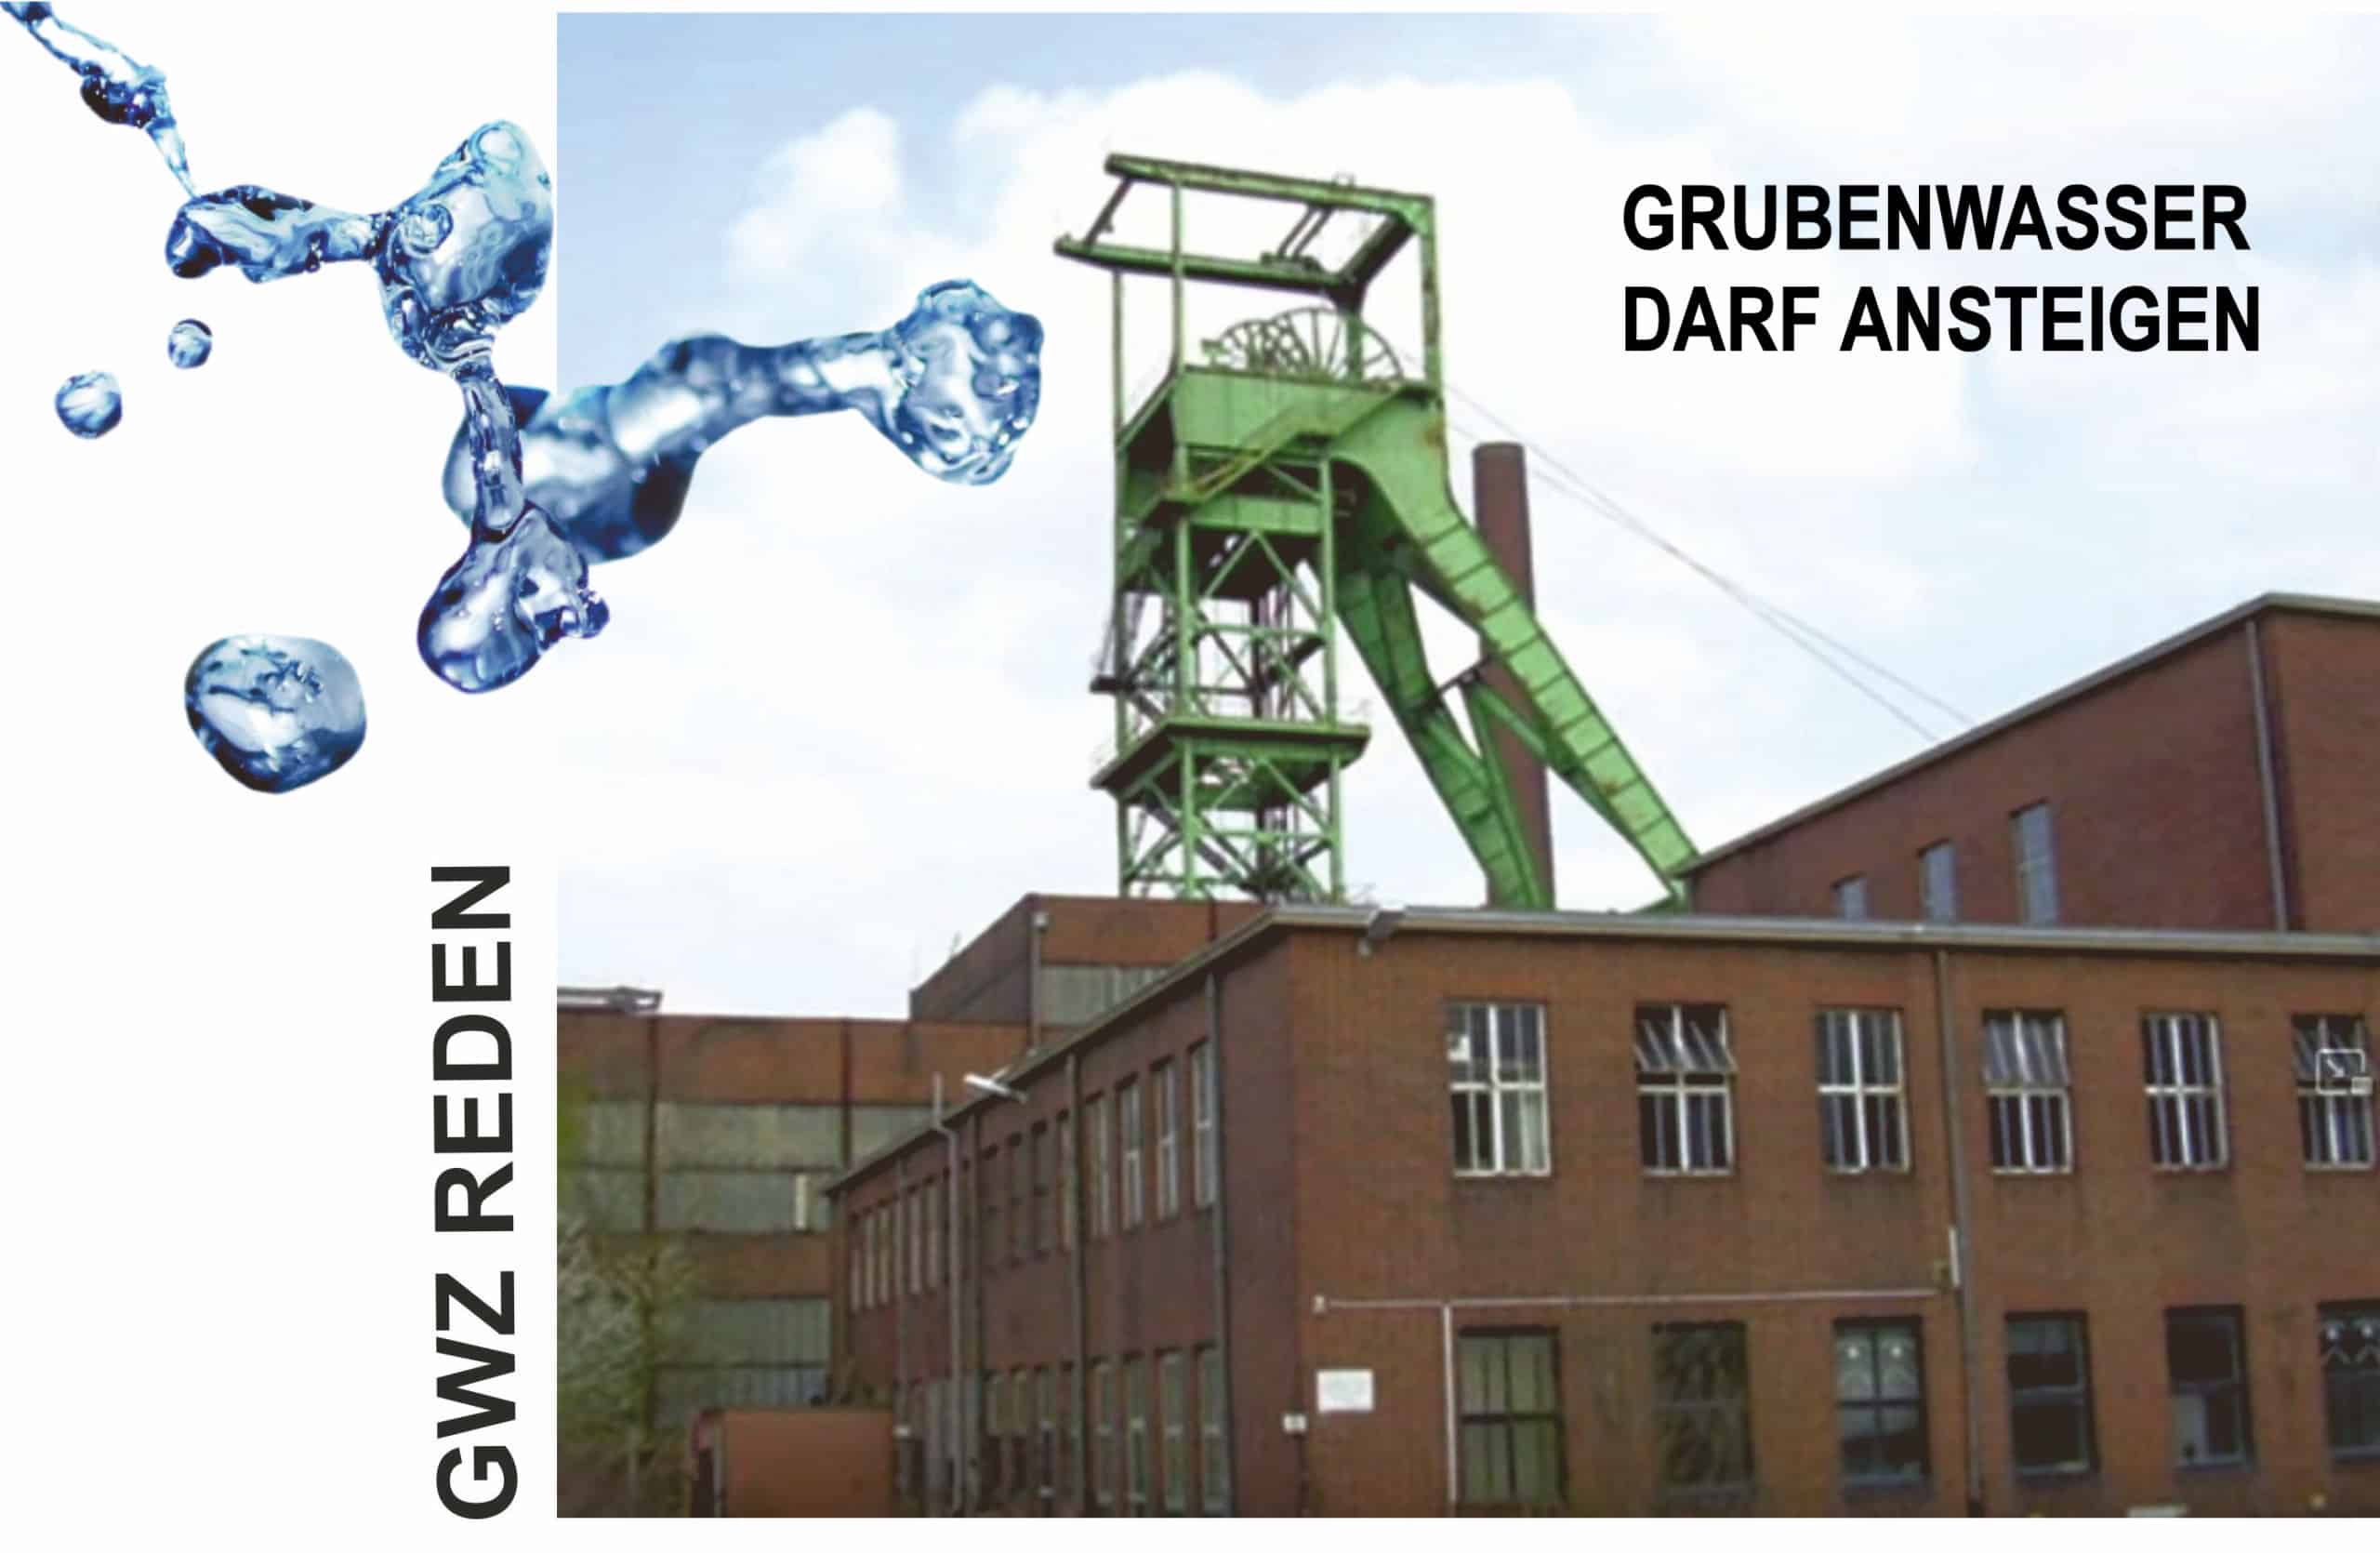 RAG-Saarland: in den Wasserprovinzen Reden und Duhamel darf das Grubenwasser ansteigen